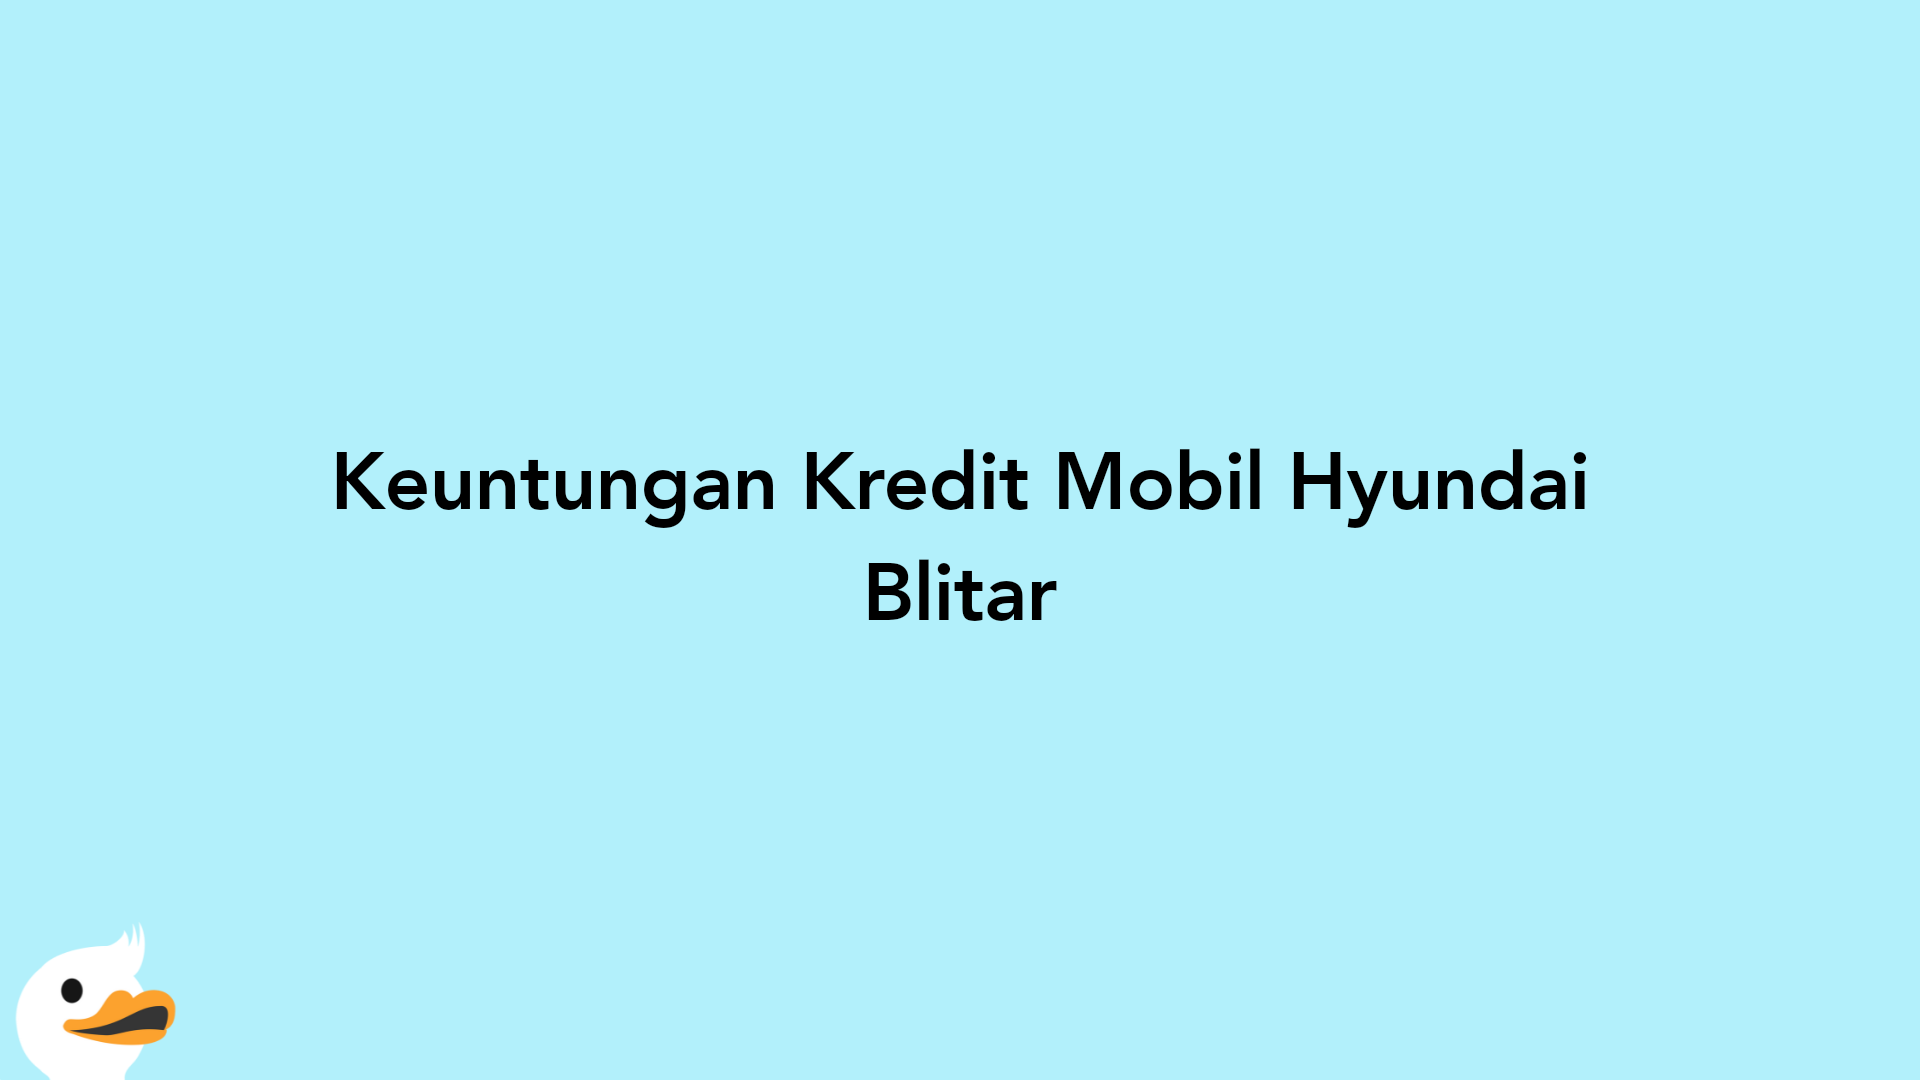 Keuntungan Kredit Mobil Hyundai Blitar